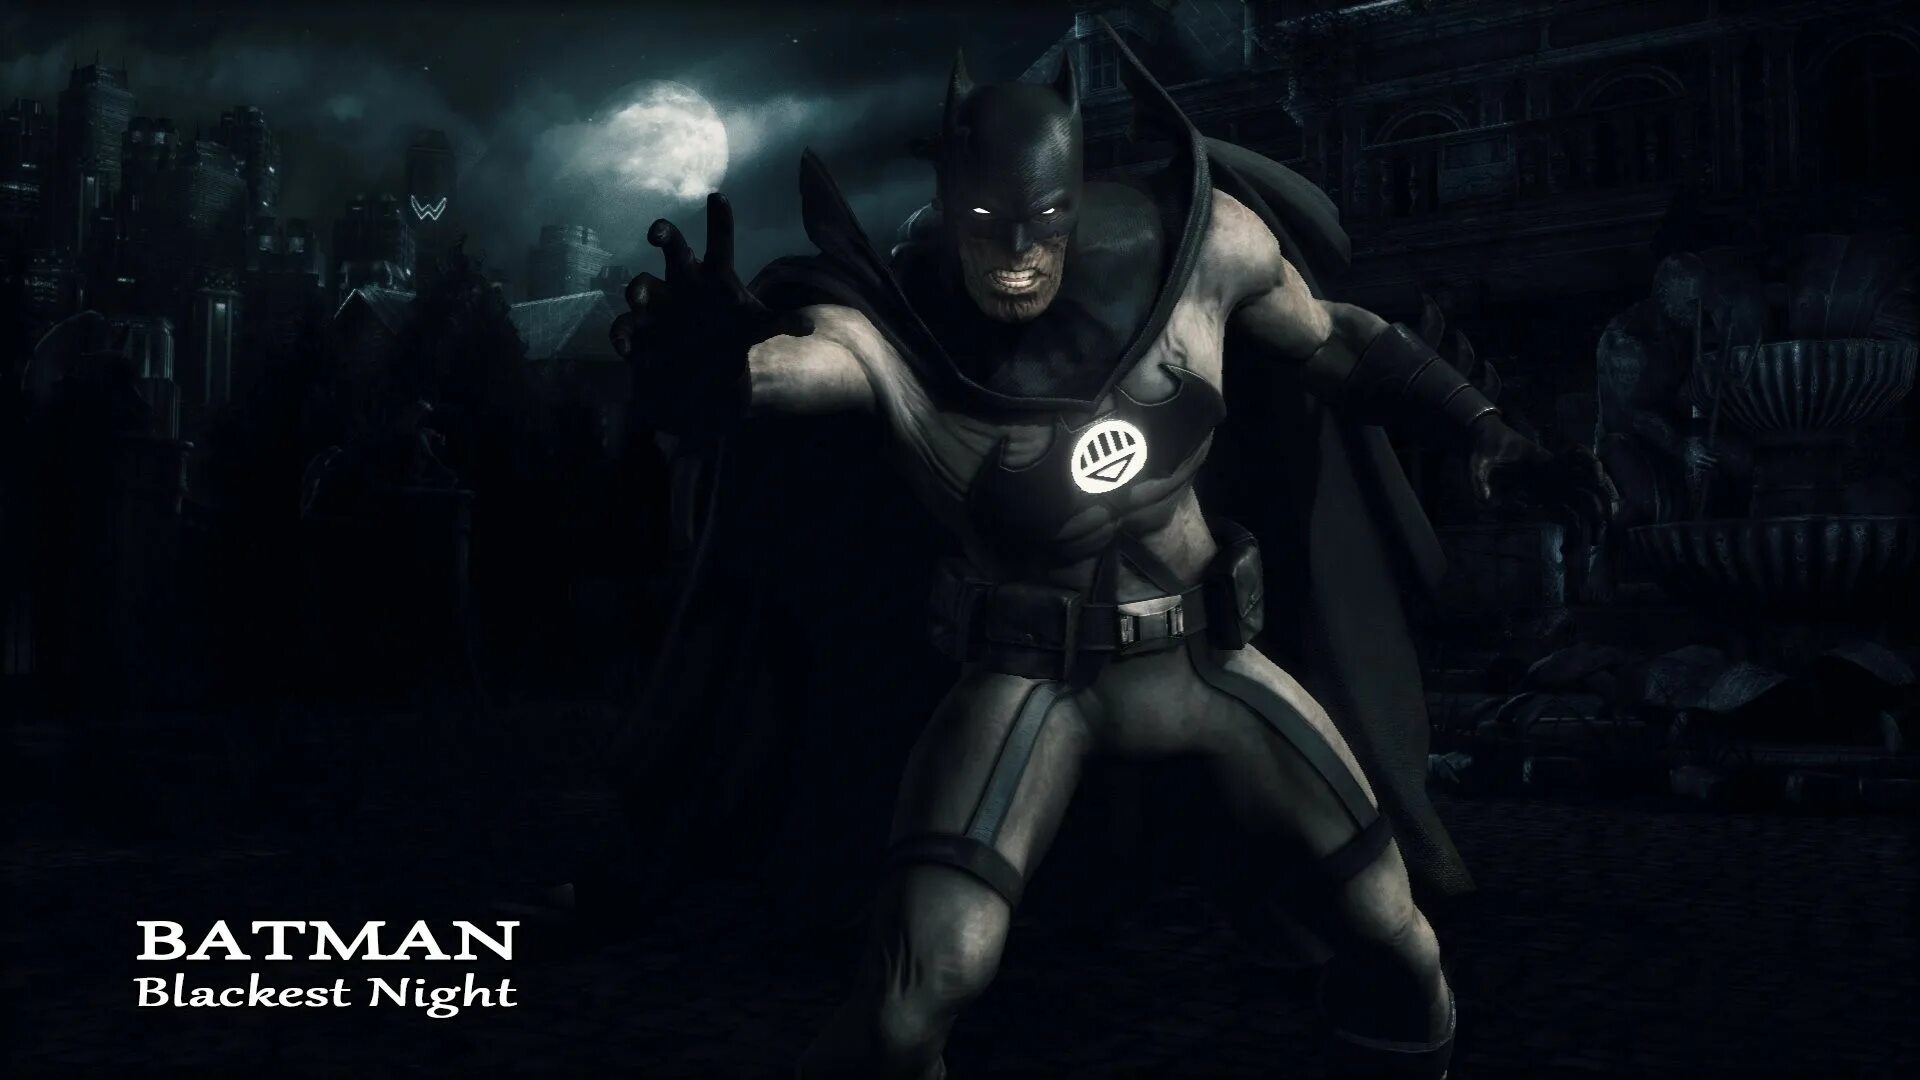 Бэтмен темная ночь. Бэтмен Аркхем Найт. Бэтмен Blackest Night. Игра Бэтмен черный рыцарь. Batman Arkham Knight Blackest Night.